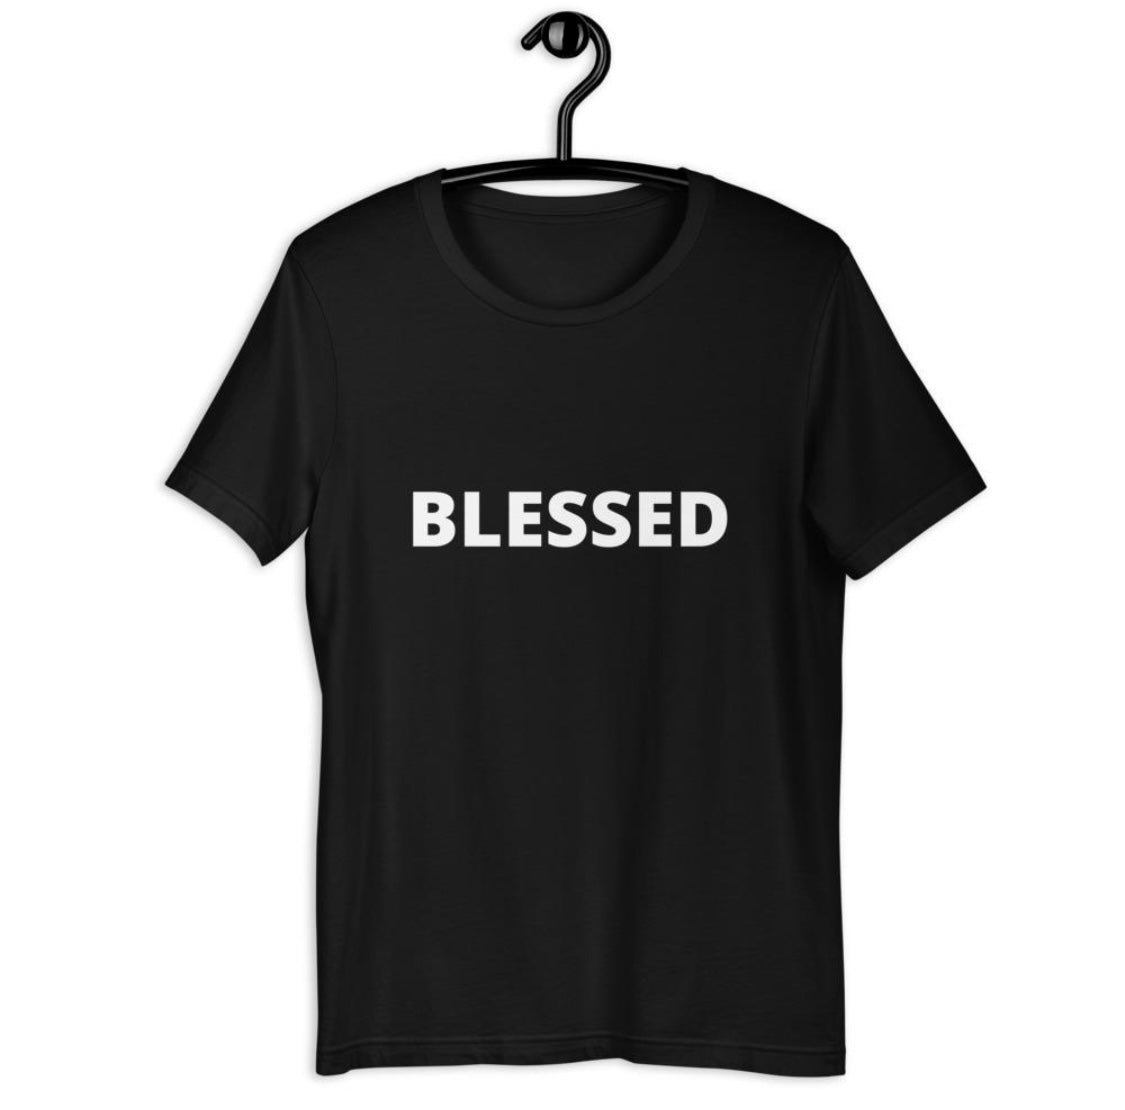 "BLESSED" Short-Sleeve UNISEX Tee